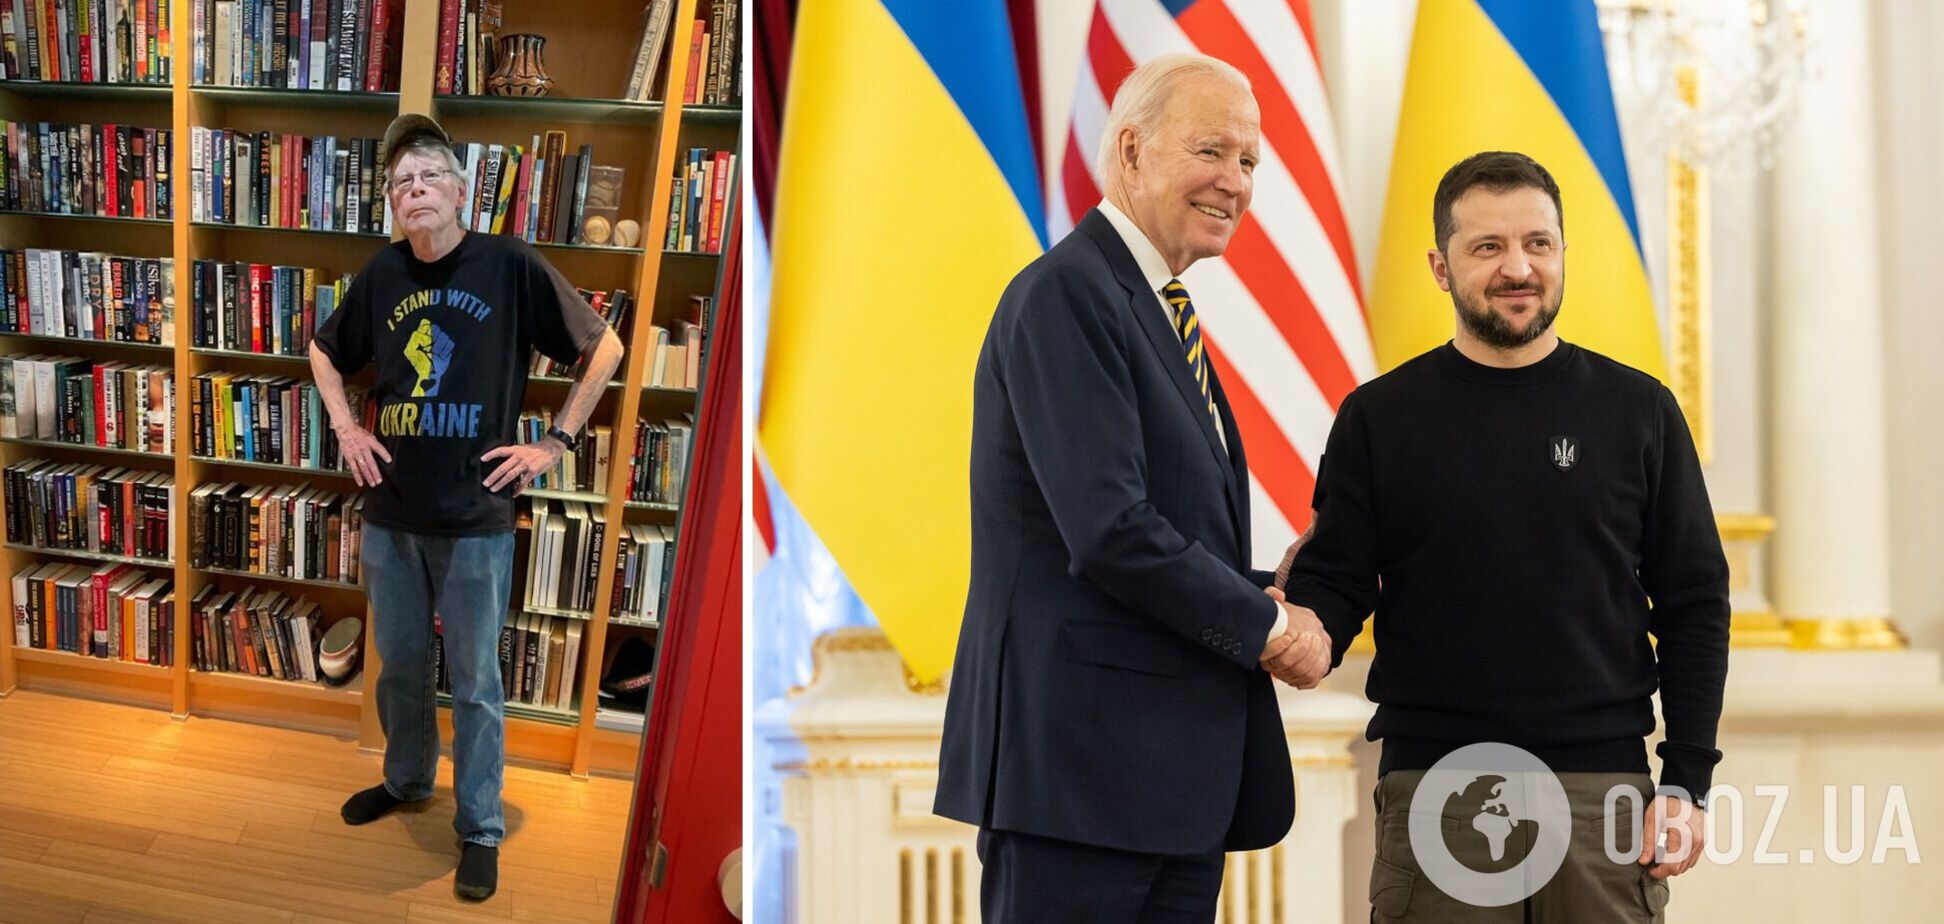 'Ярд мужества': легендарный Стивен Кинг отреагировал на визит Байдена в Киев